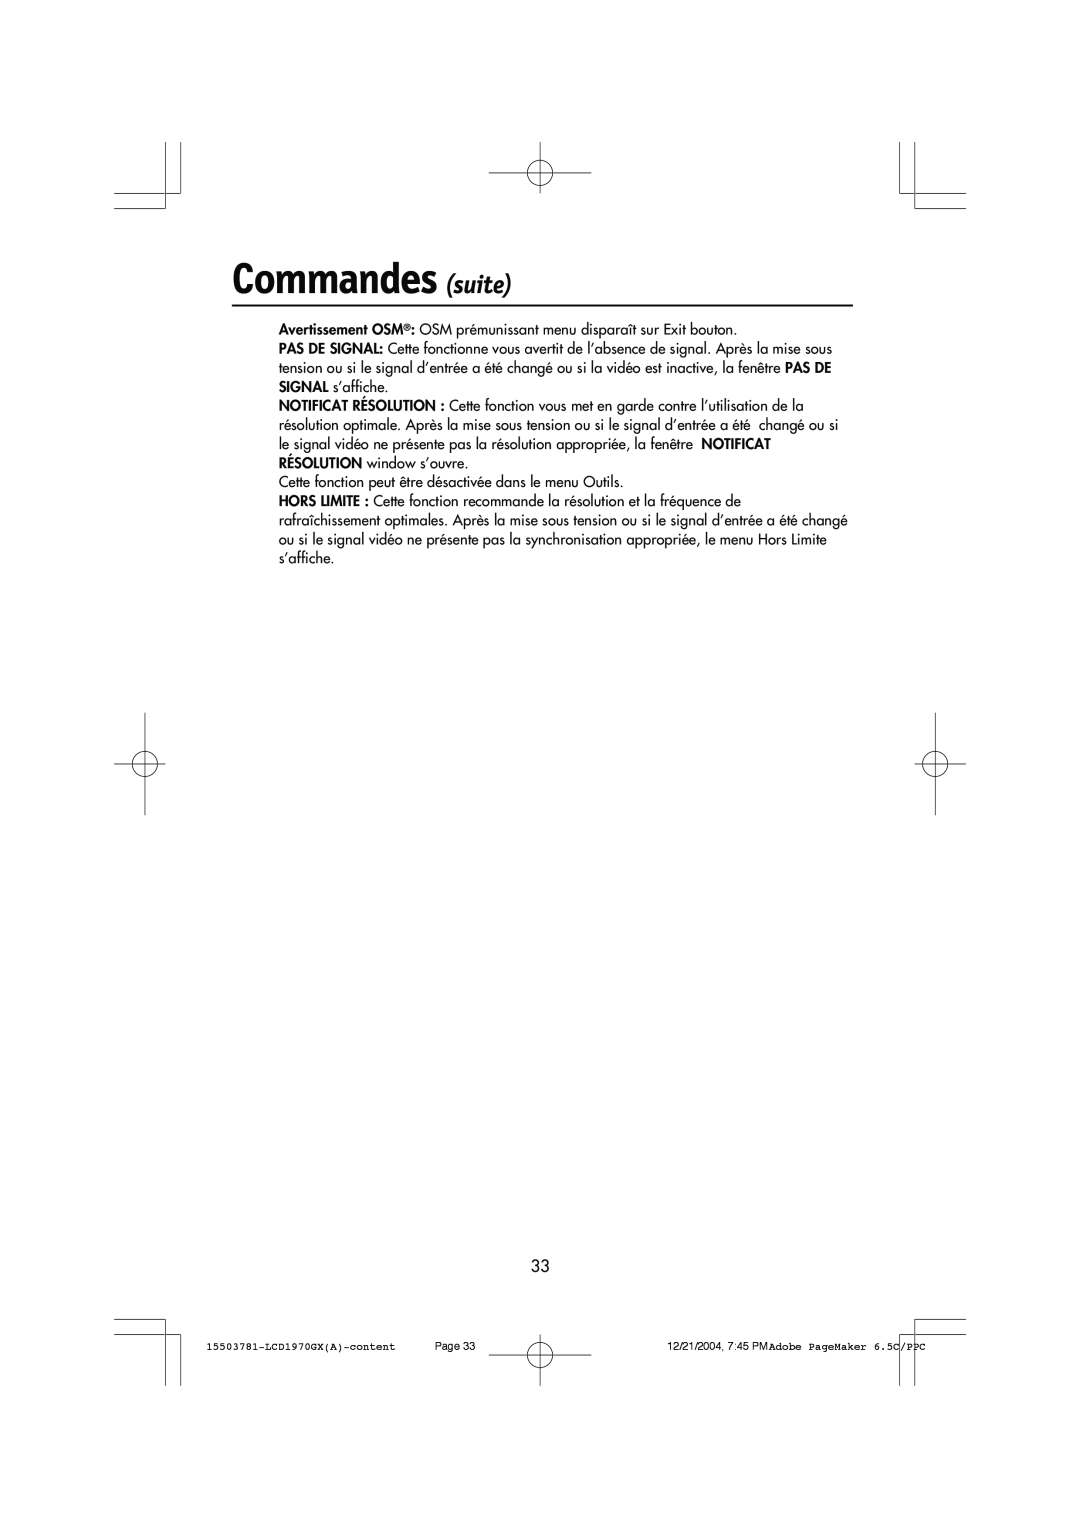 NEC LCD1970GX user manual Commandes suite, Avertissement OSM¨ OSM prŽmunissant menu dispara”t sur Exit bouton 